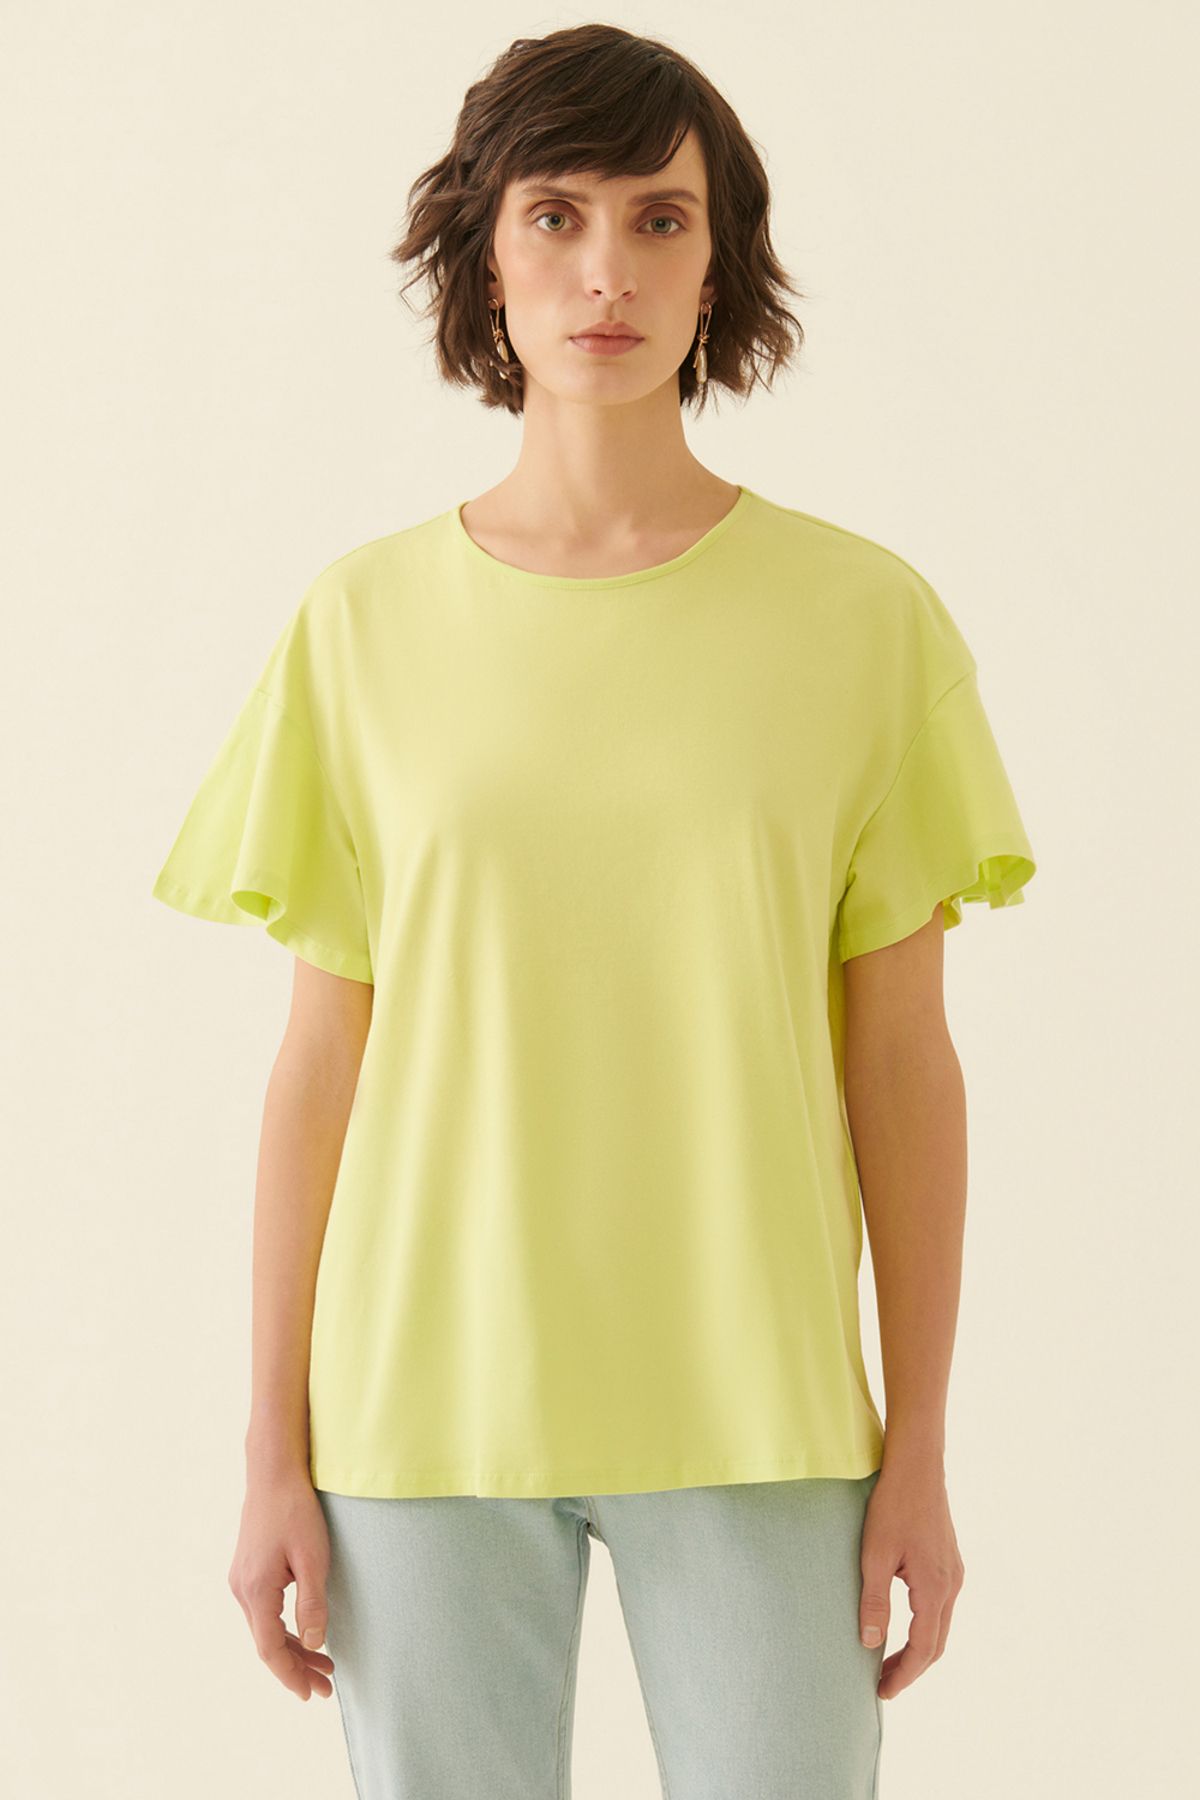 Perspective Coras Regular Fit Kayık Yaka Standart Boy Misket Limonu Renk Kadın Tişört